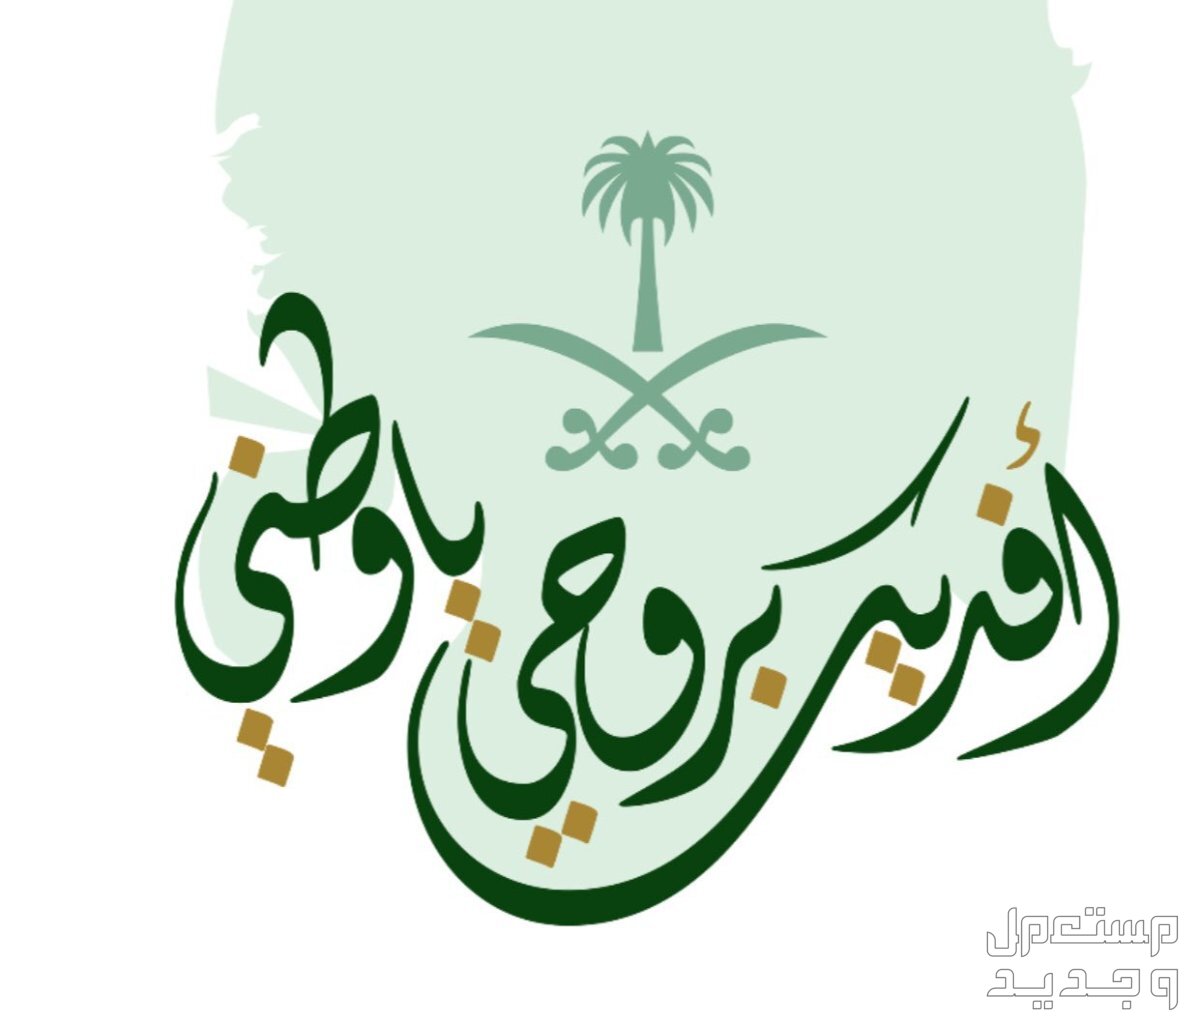 أجمل رسائل تهنئة بمناسبة اليوم الوطني السعودي 94 في الجزائر